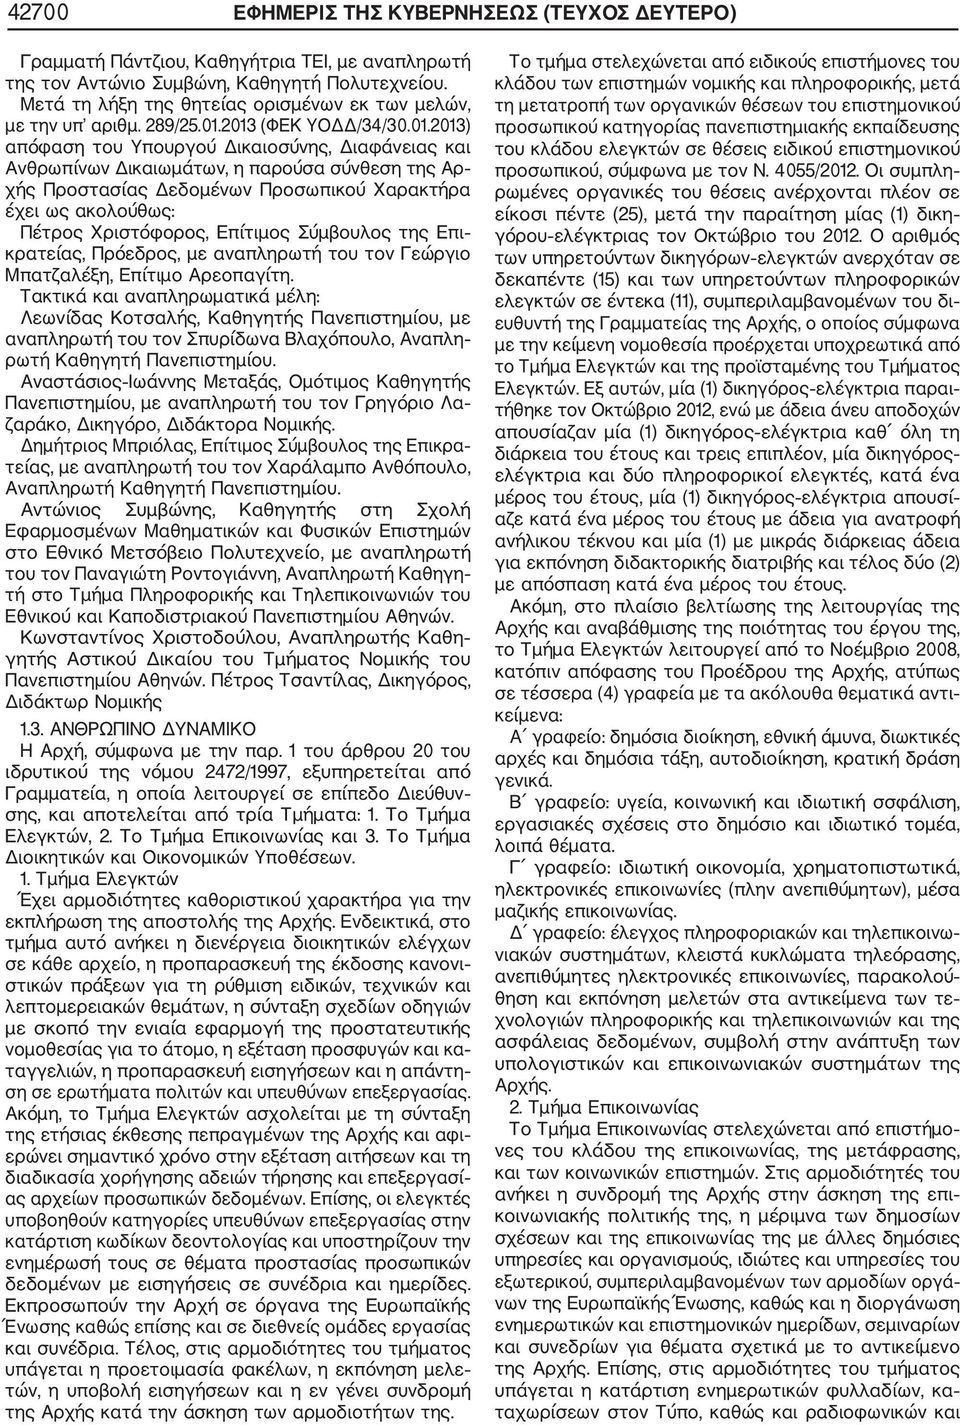 2013 (ΦΕΚ ΥΟ /34/30.01.2013) απόφαση του Υπουργού ικαιοσύνης, ιαφάνειας και Ανθρωπίνων ικαιωµάτων, η παρούσα σύνθεση της Αρ χής Προστασίας εδοµένων Προσωπικού Χαρακτήρα έχει ως ακολούθως: Πέτρος